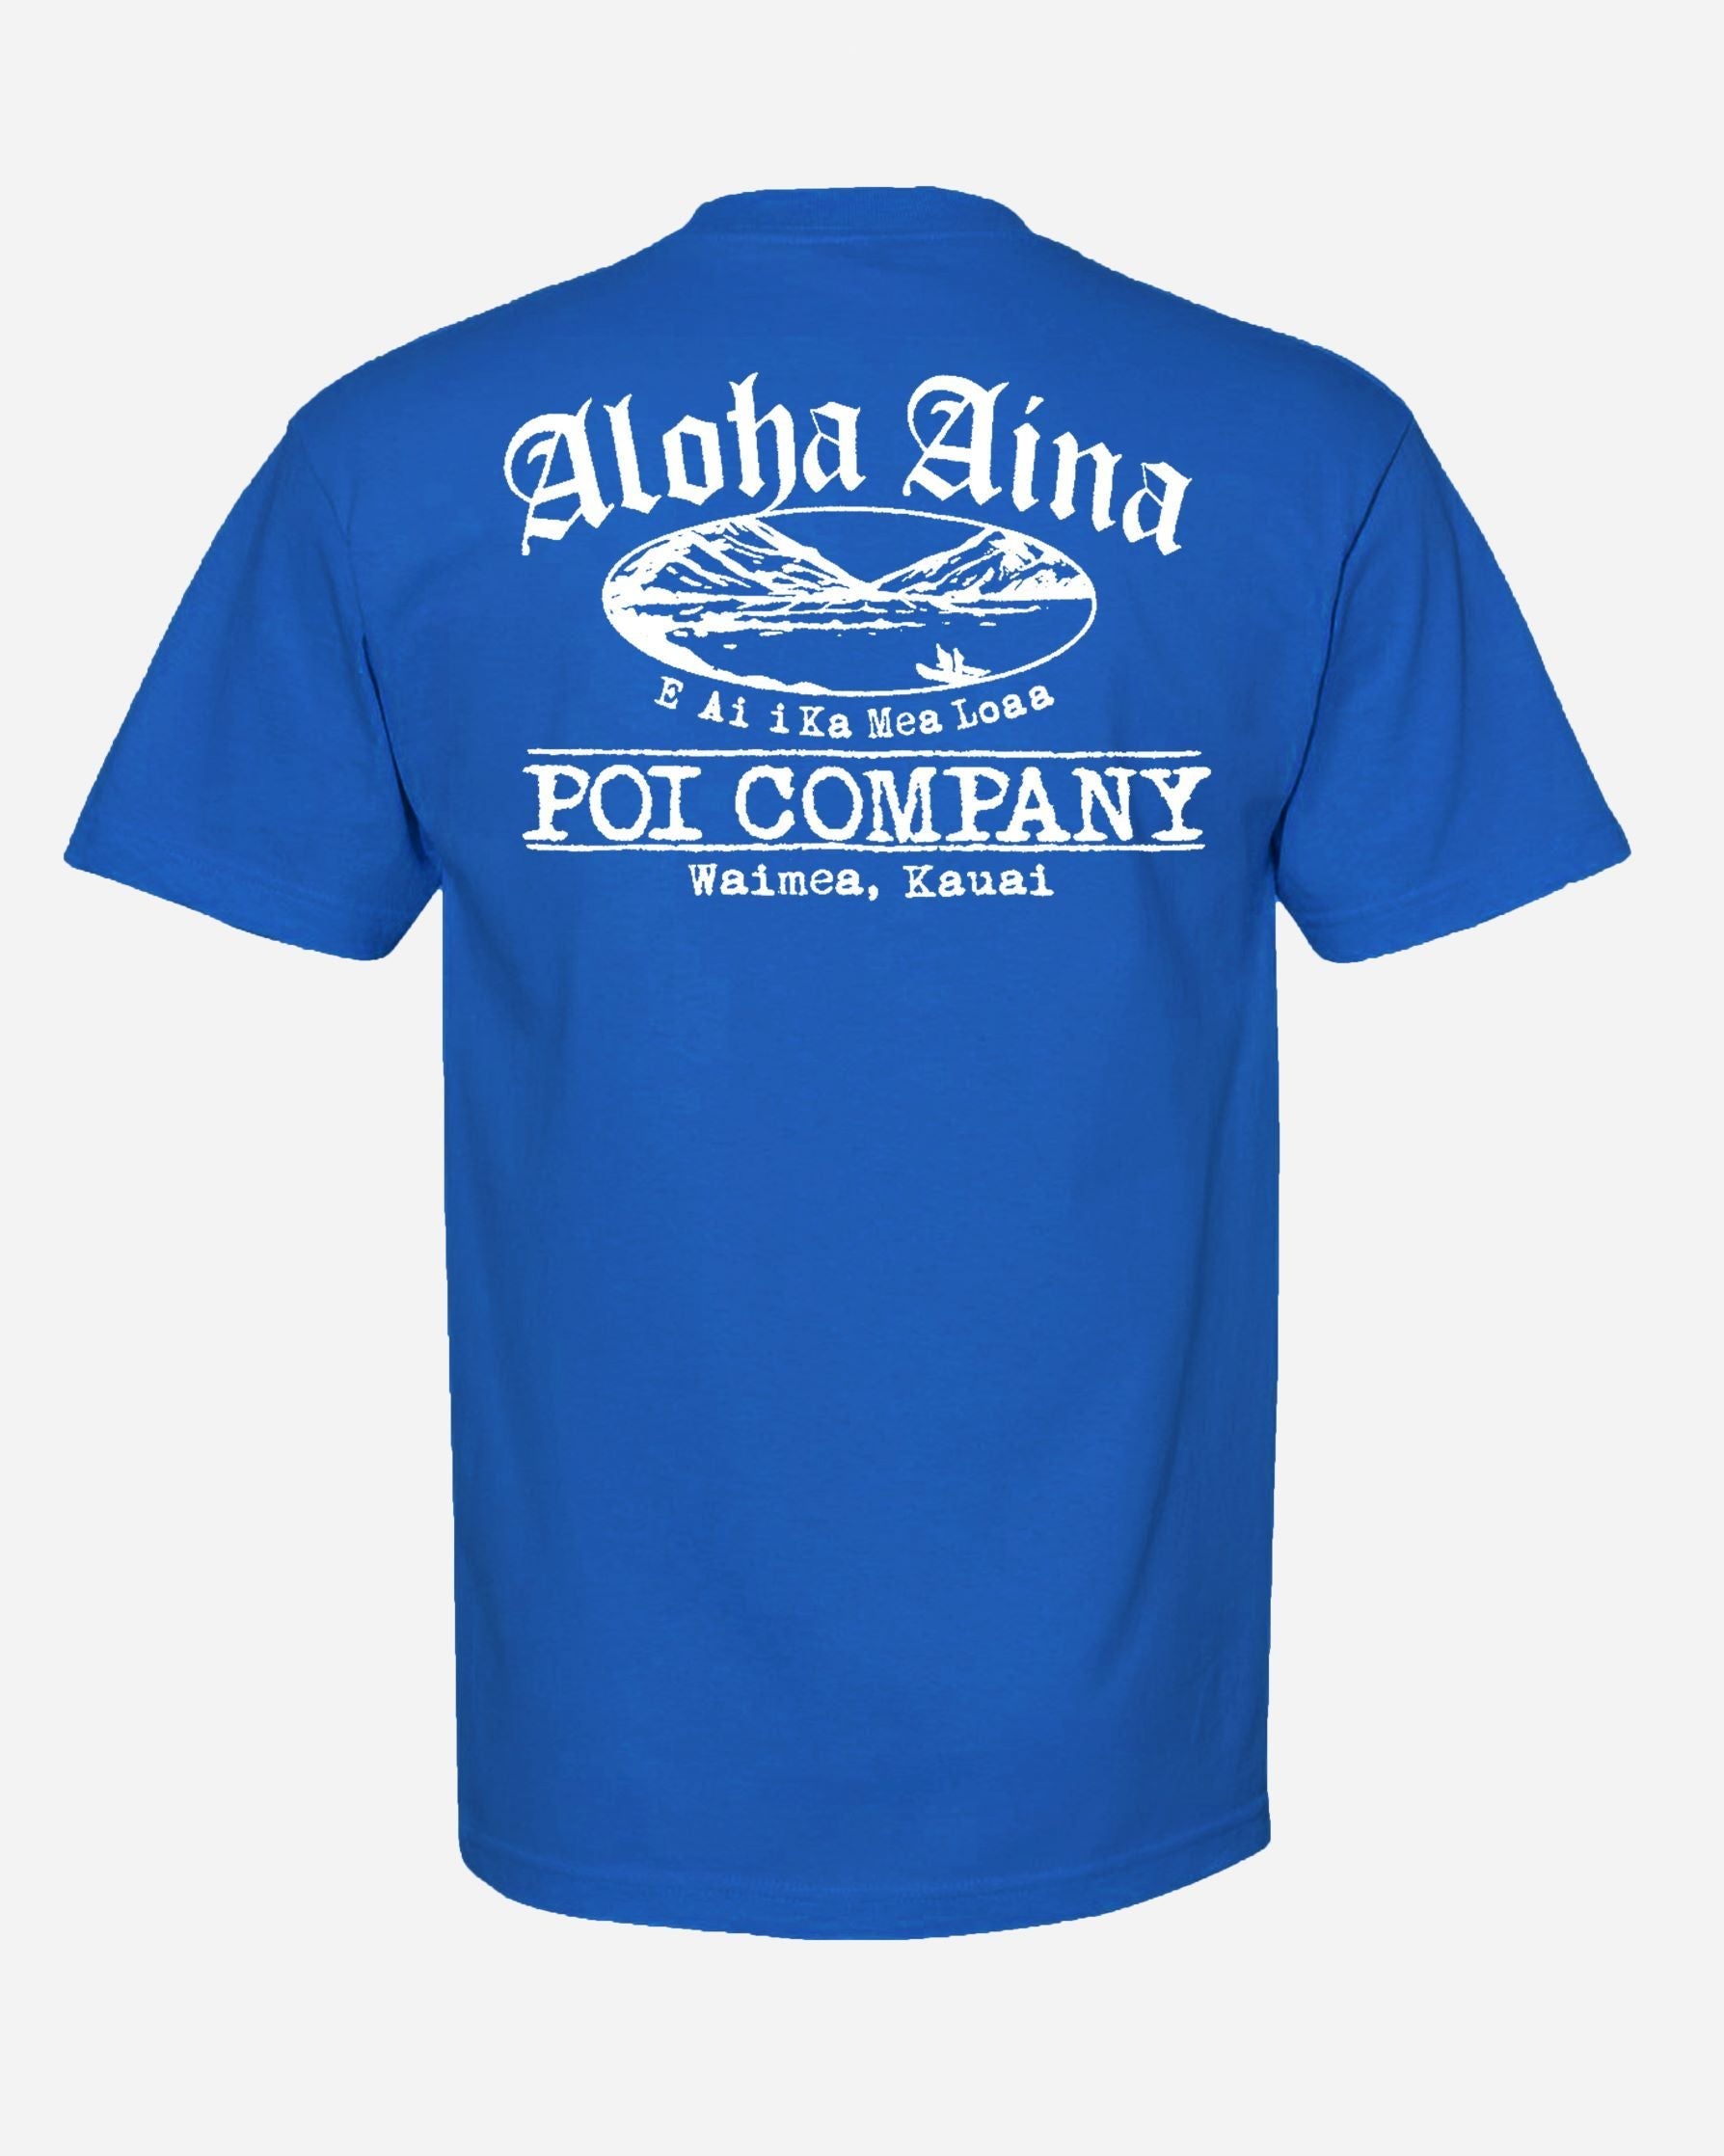 Pop-Up Mākeke - Aloha Aina Poi Co. - Mauka Logo Men's Short Sleeve T-Shirt - Blue - Back View